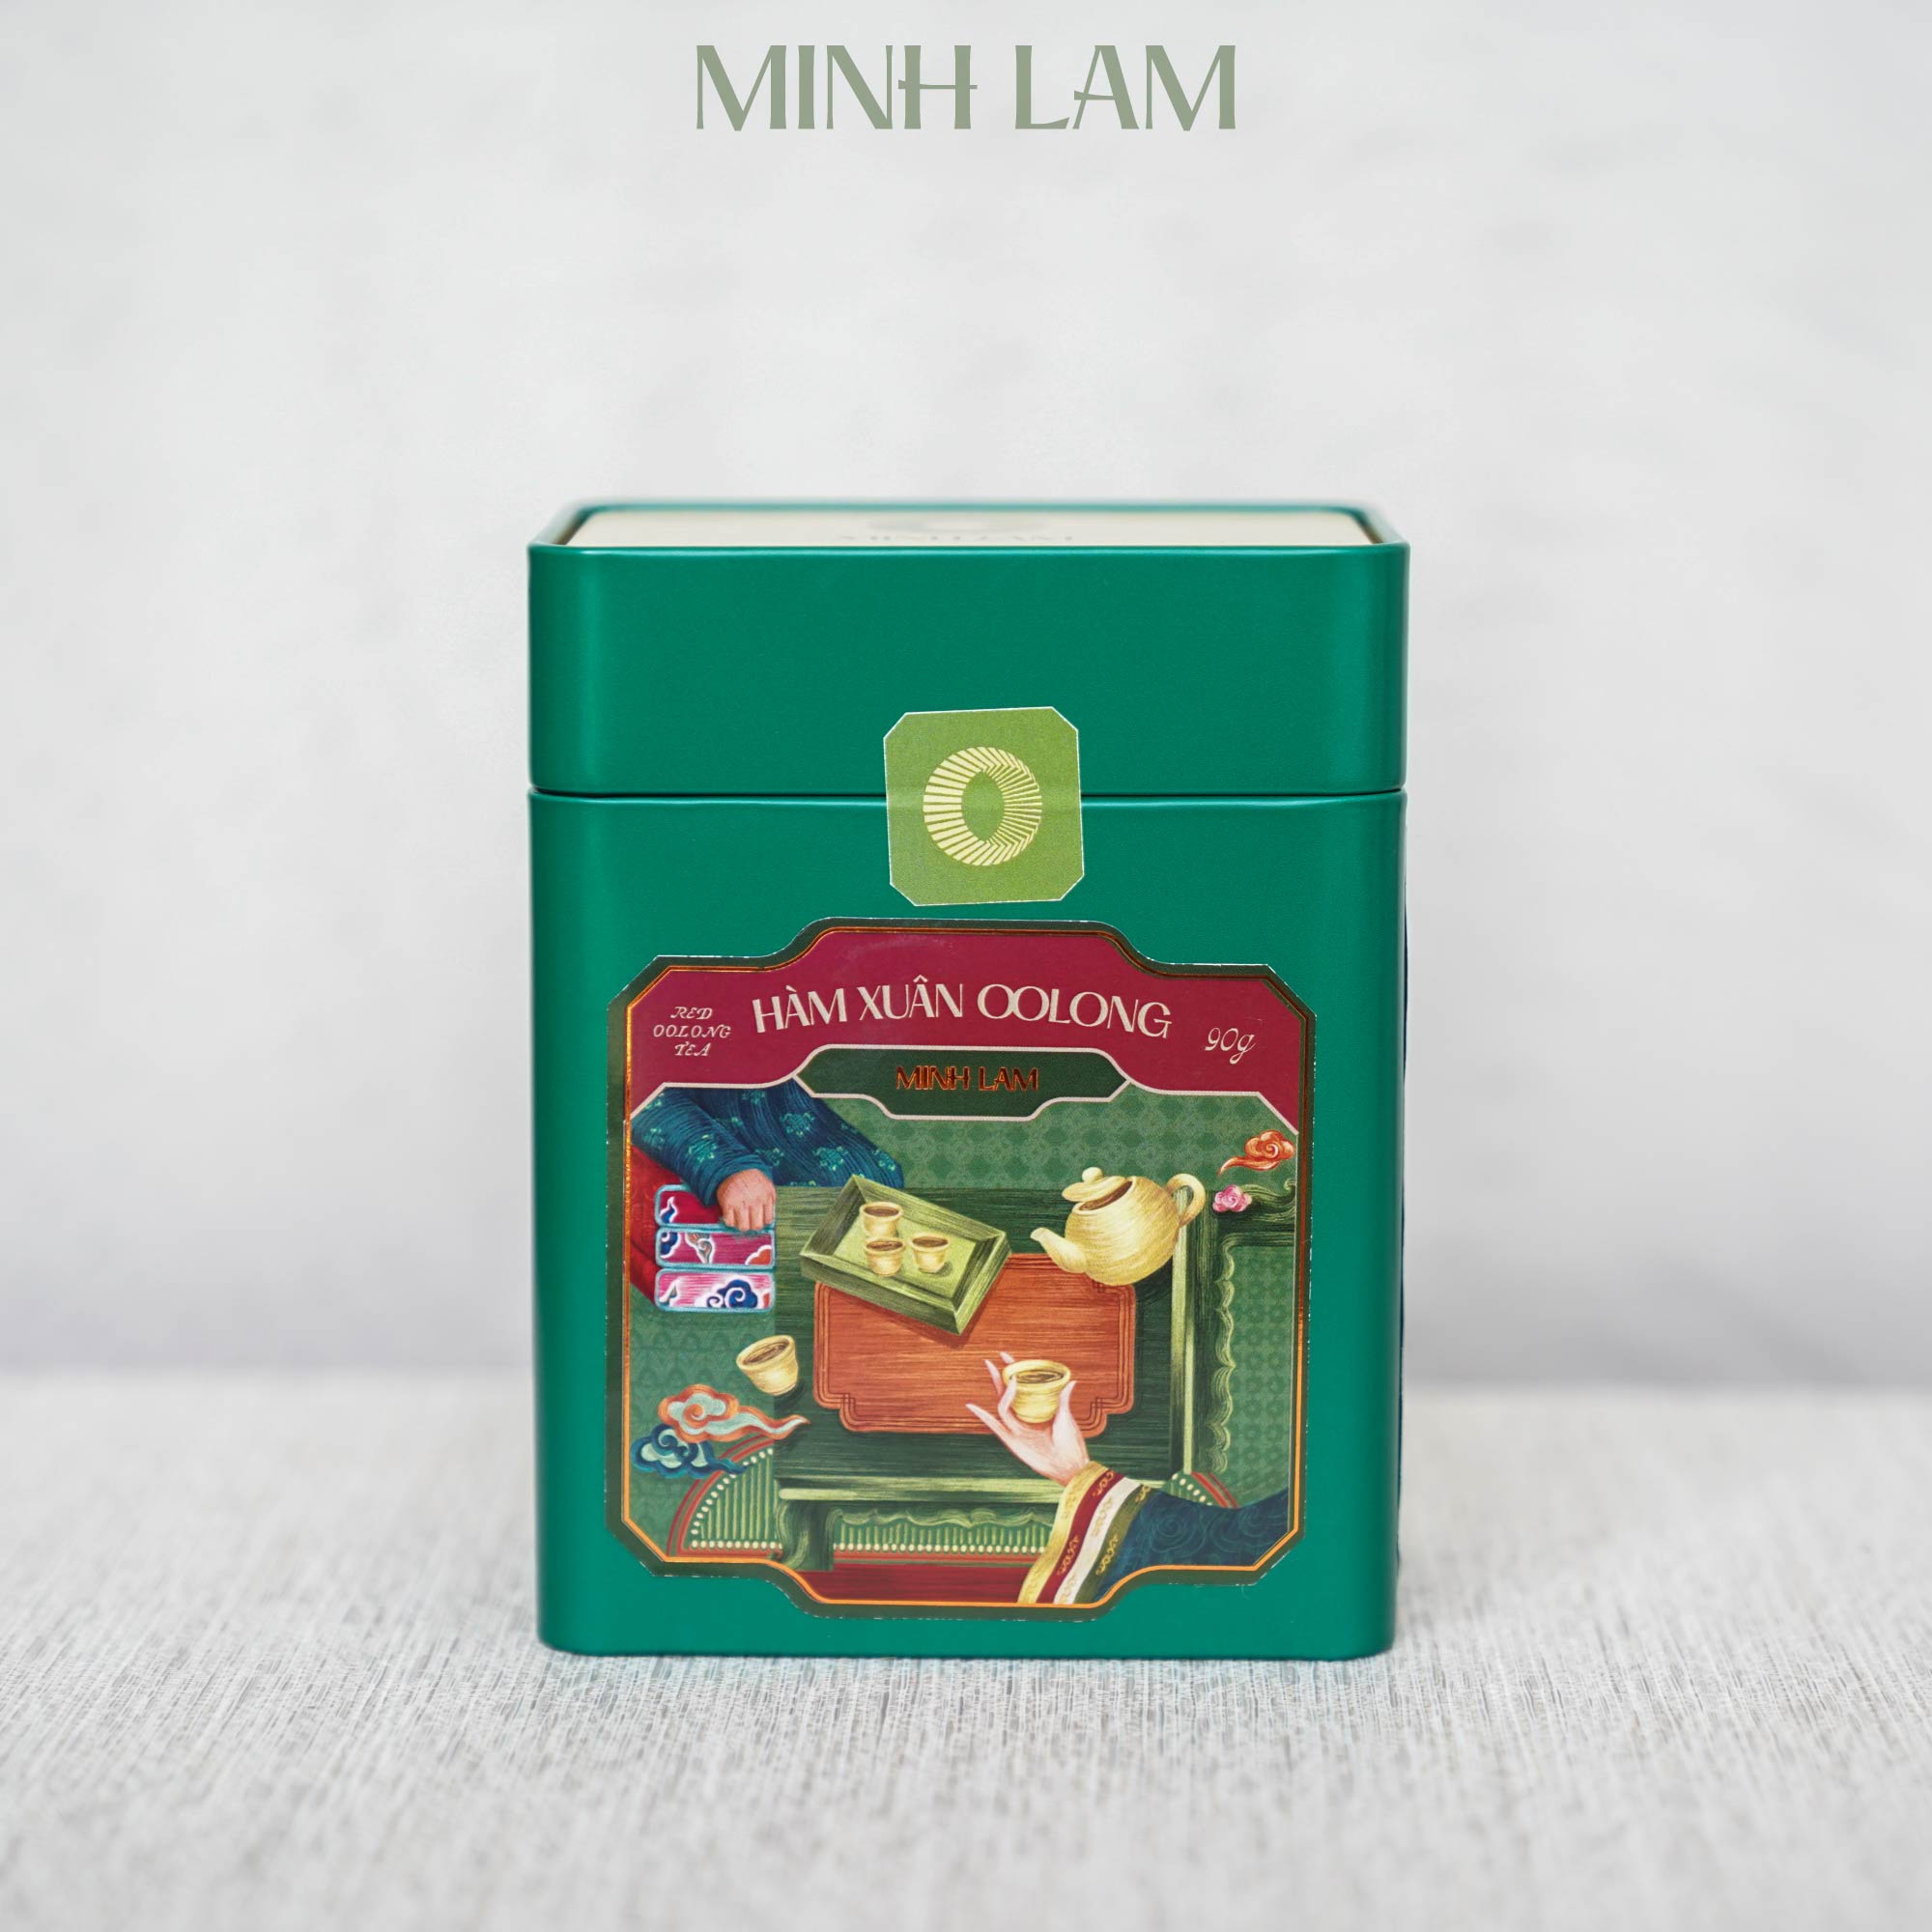 Hàm Xuân Oolong - trà Oolong đỏ Minh Lam